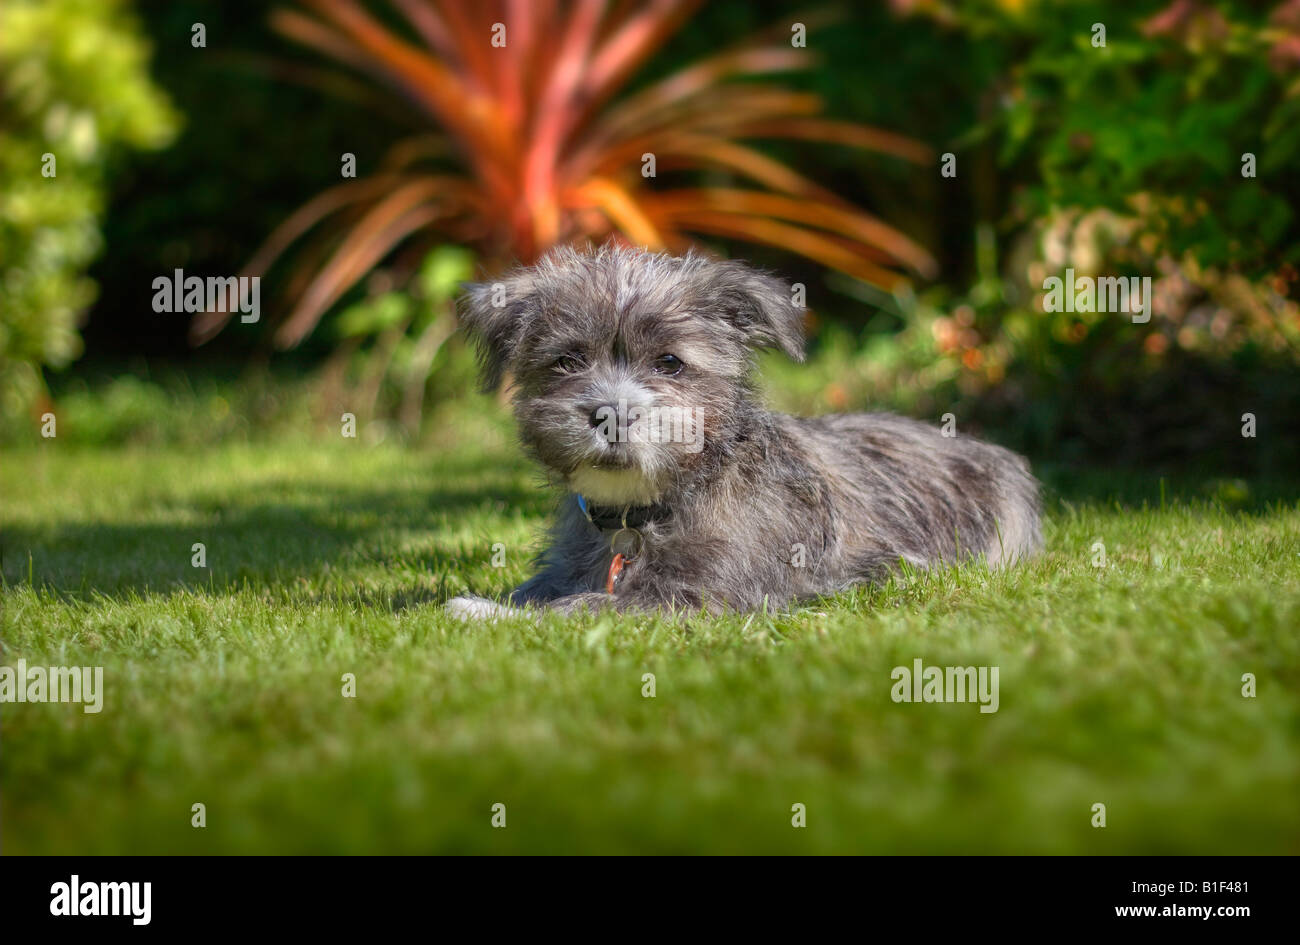 Puppy sitting in garden Stock Photo